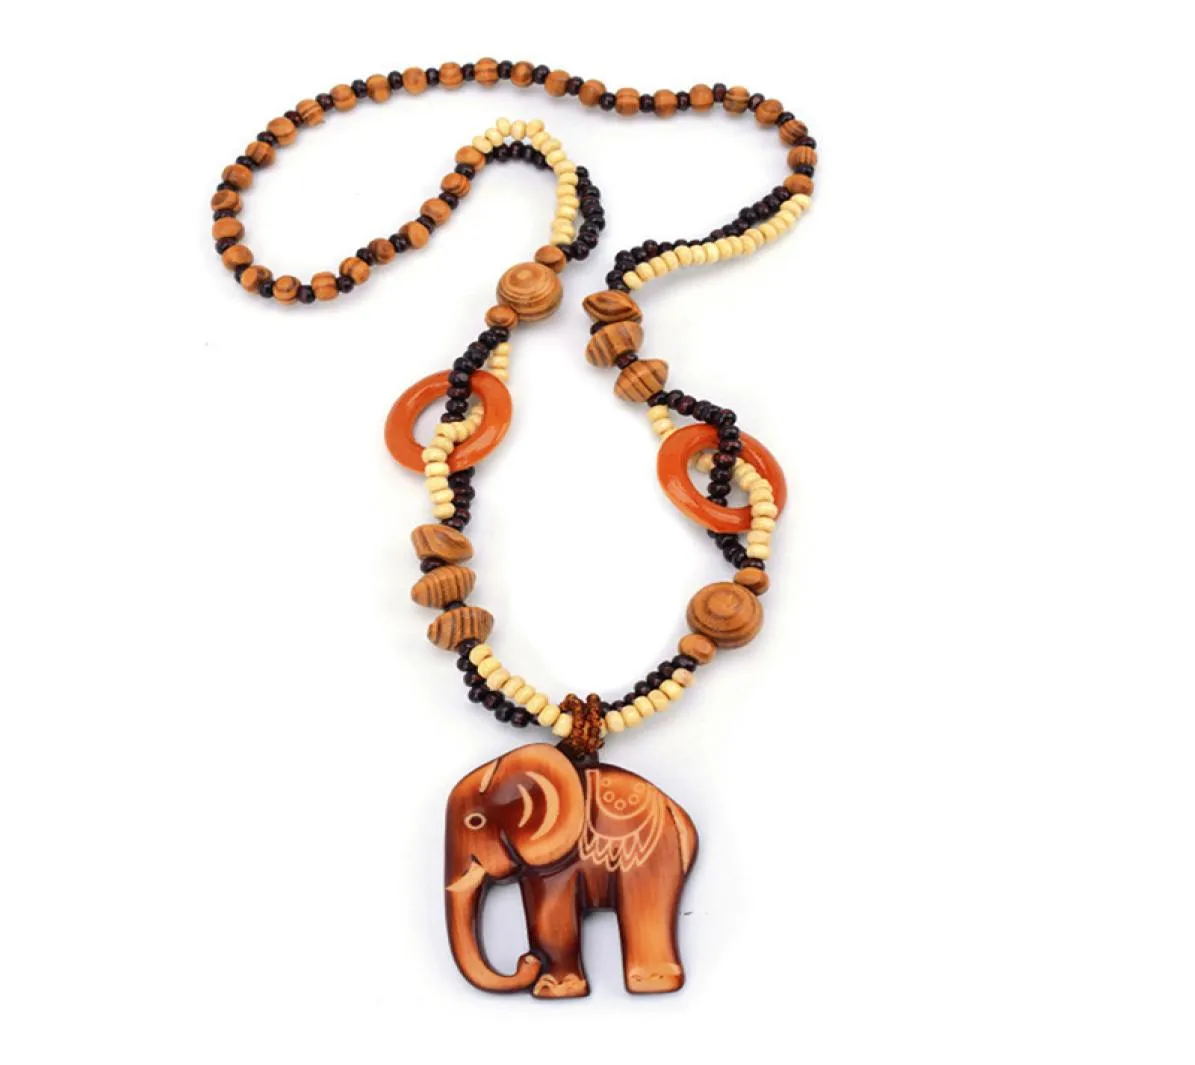 Ny 2020 Boho Ethnic Jewelry Long Hand Made Bead Wood Elephant Pendant Maxi Halsband för kvinnor hela repkedjan trendy9808170